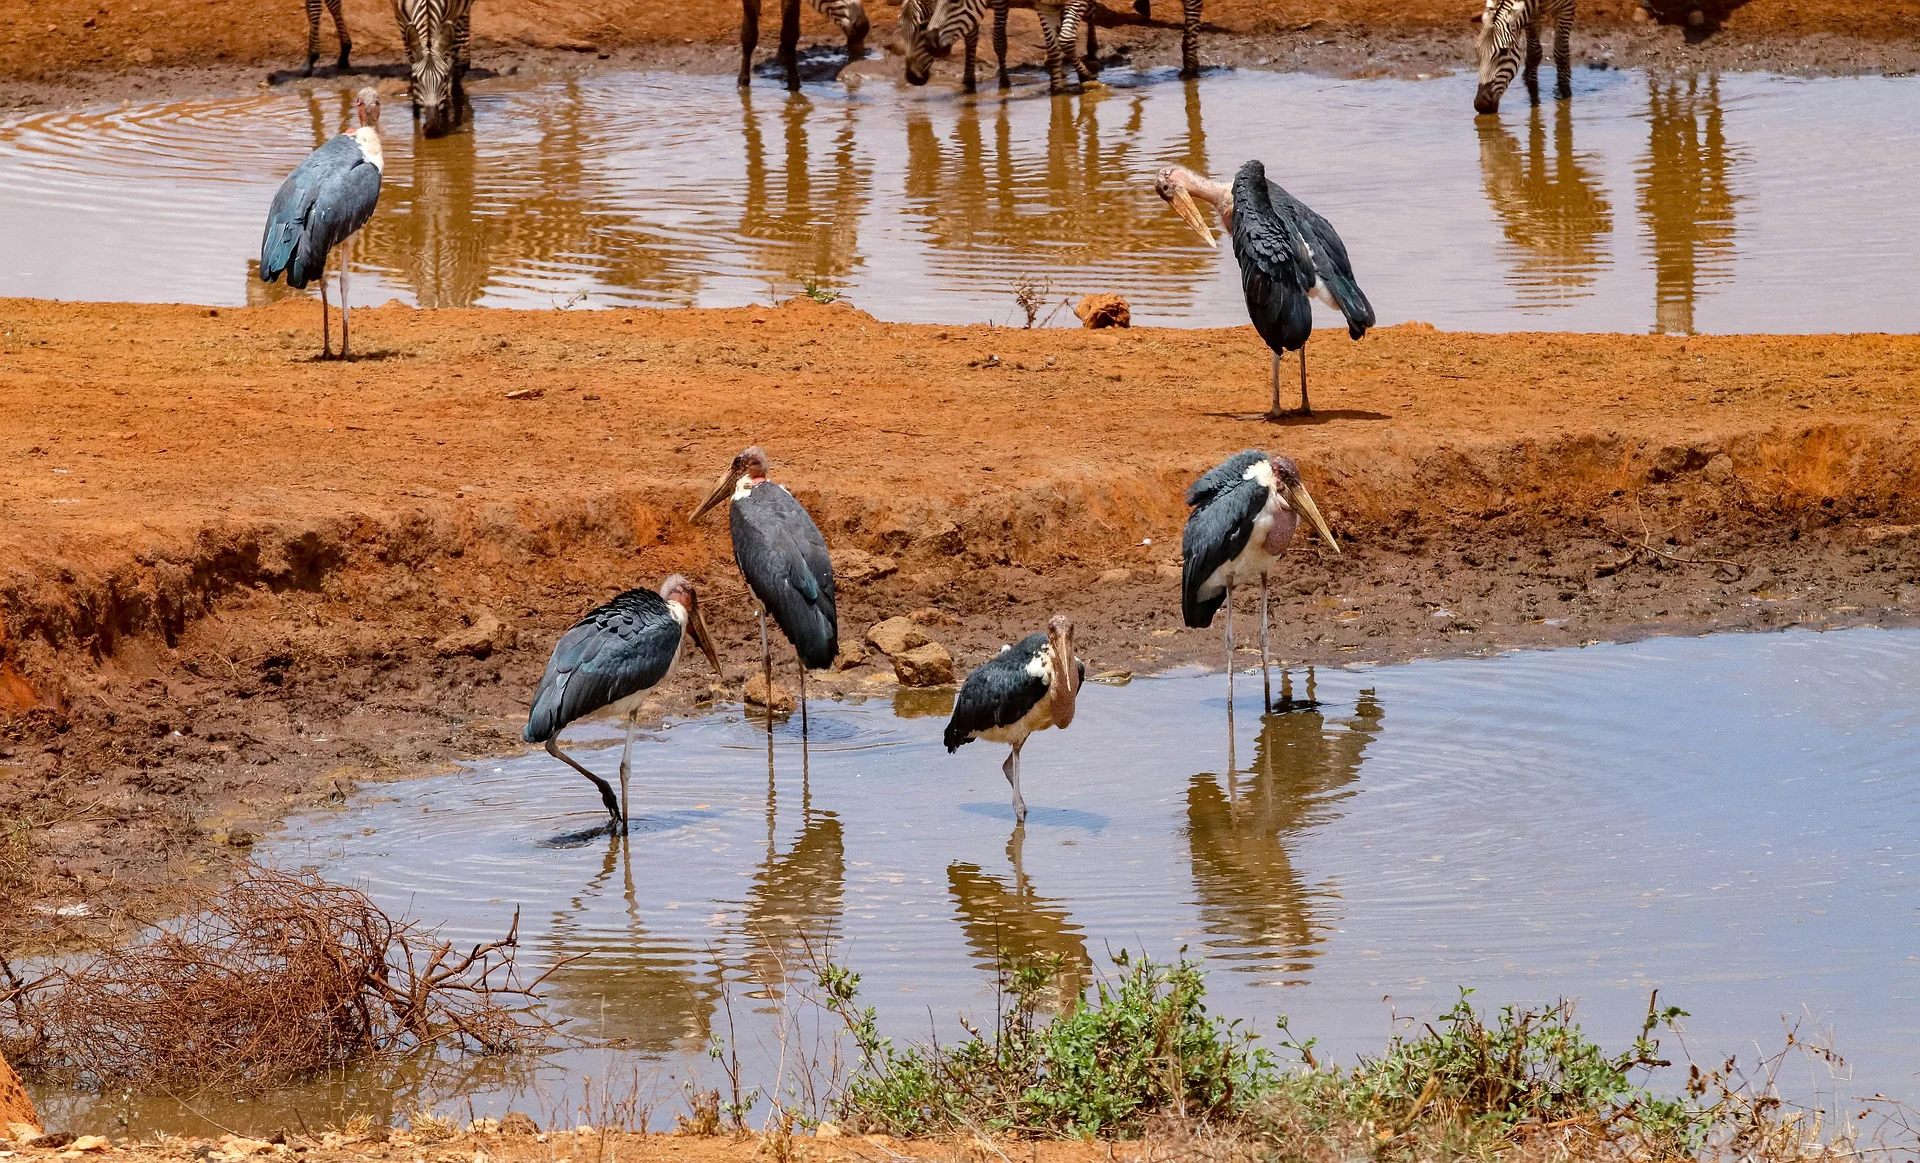 Bird watching safari in Kenya